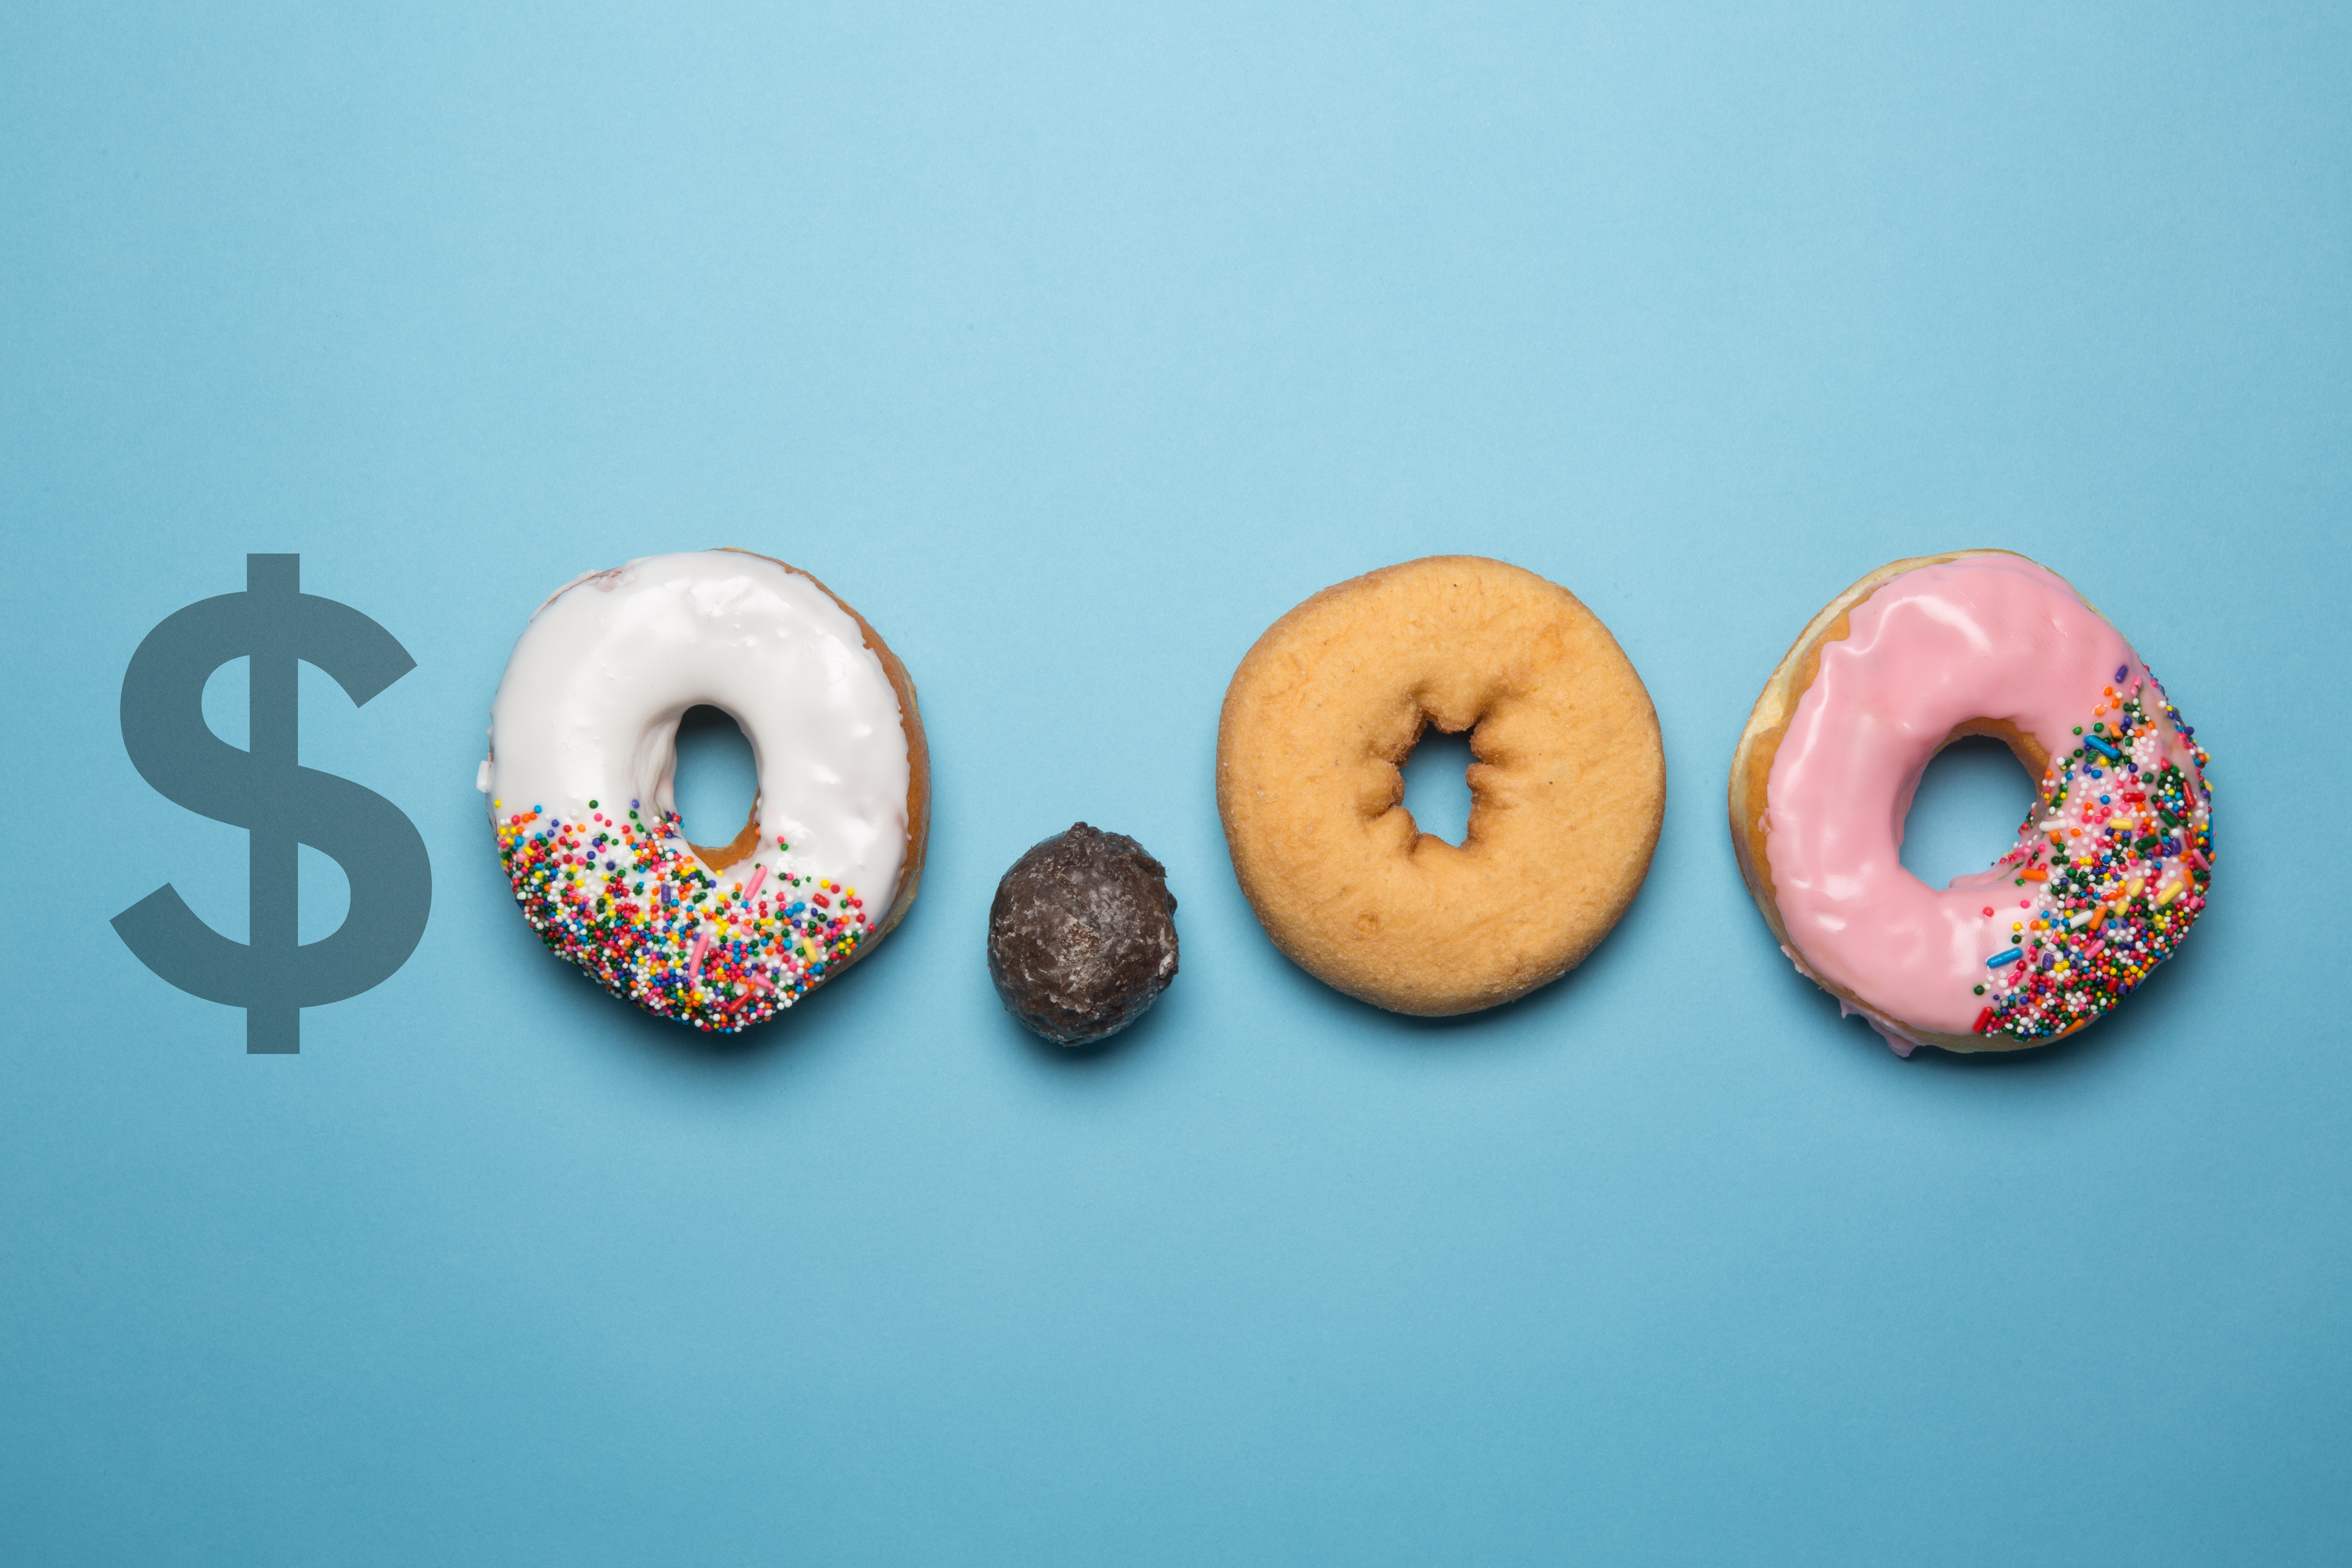 Tim Hortons Free Donut 2021 for National Donut Day on June 4